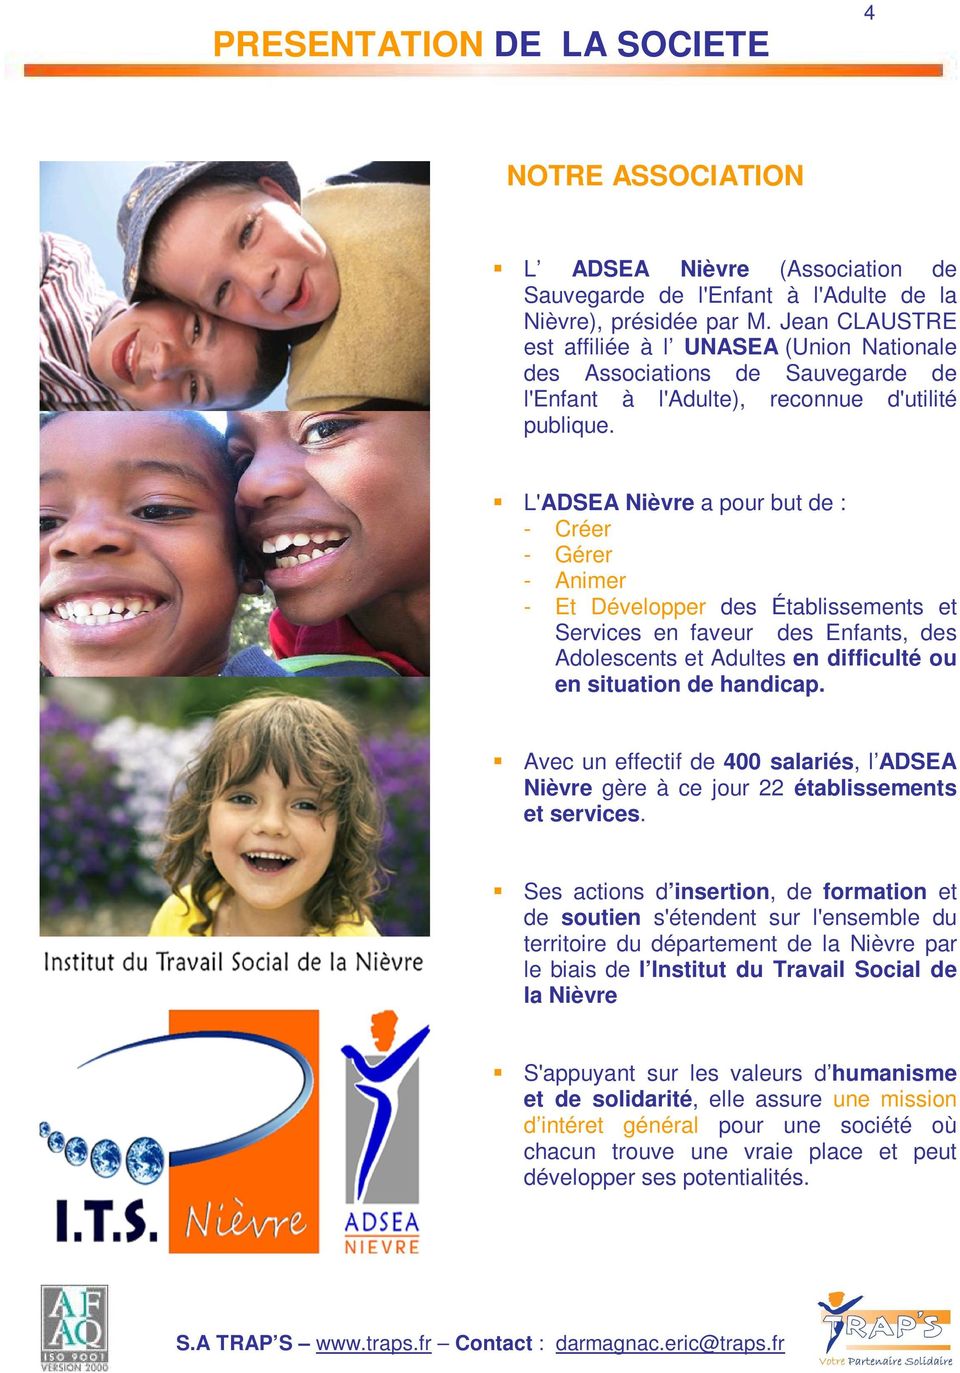 L'ADSEA Nièvre a pour but de : - Créer - Gérer - Animer - Et Développer des Établissements et Services en faveur des Enfants, des Adolescents et Adultes en difficulté ou en situation de handicap.